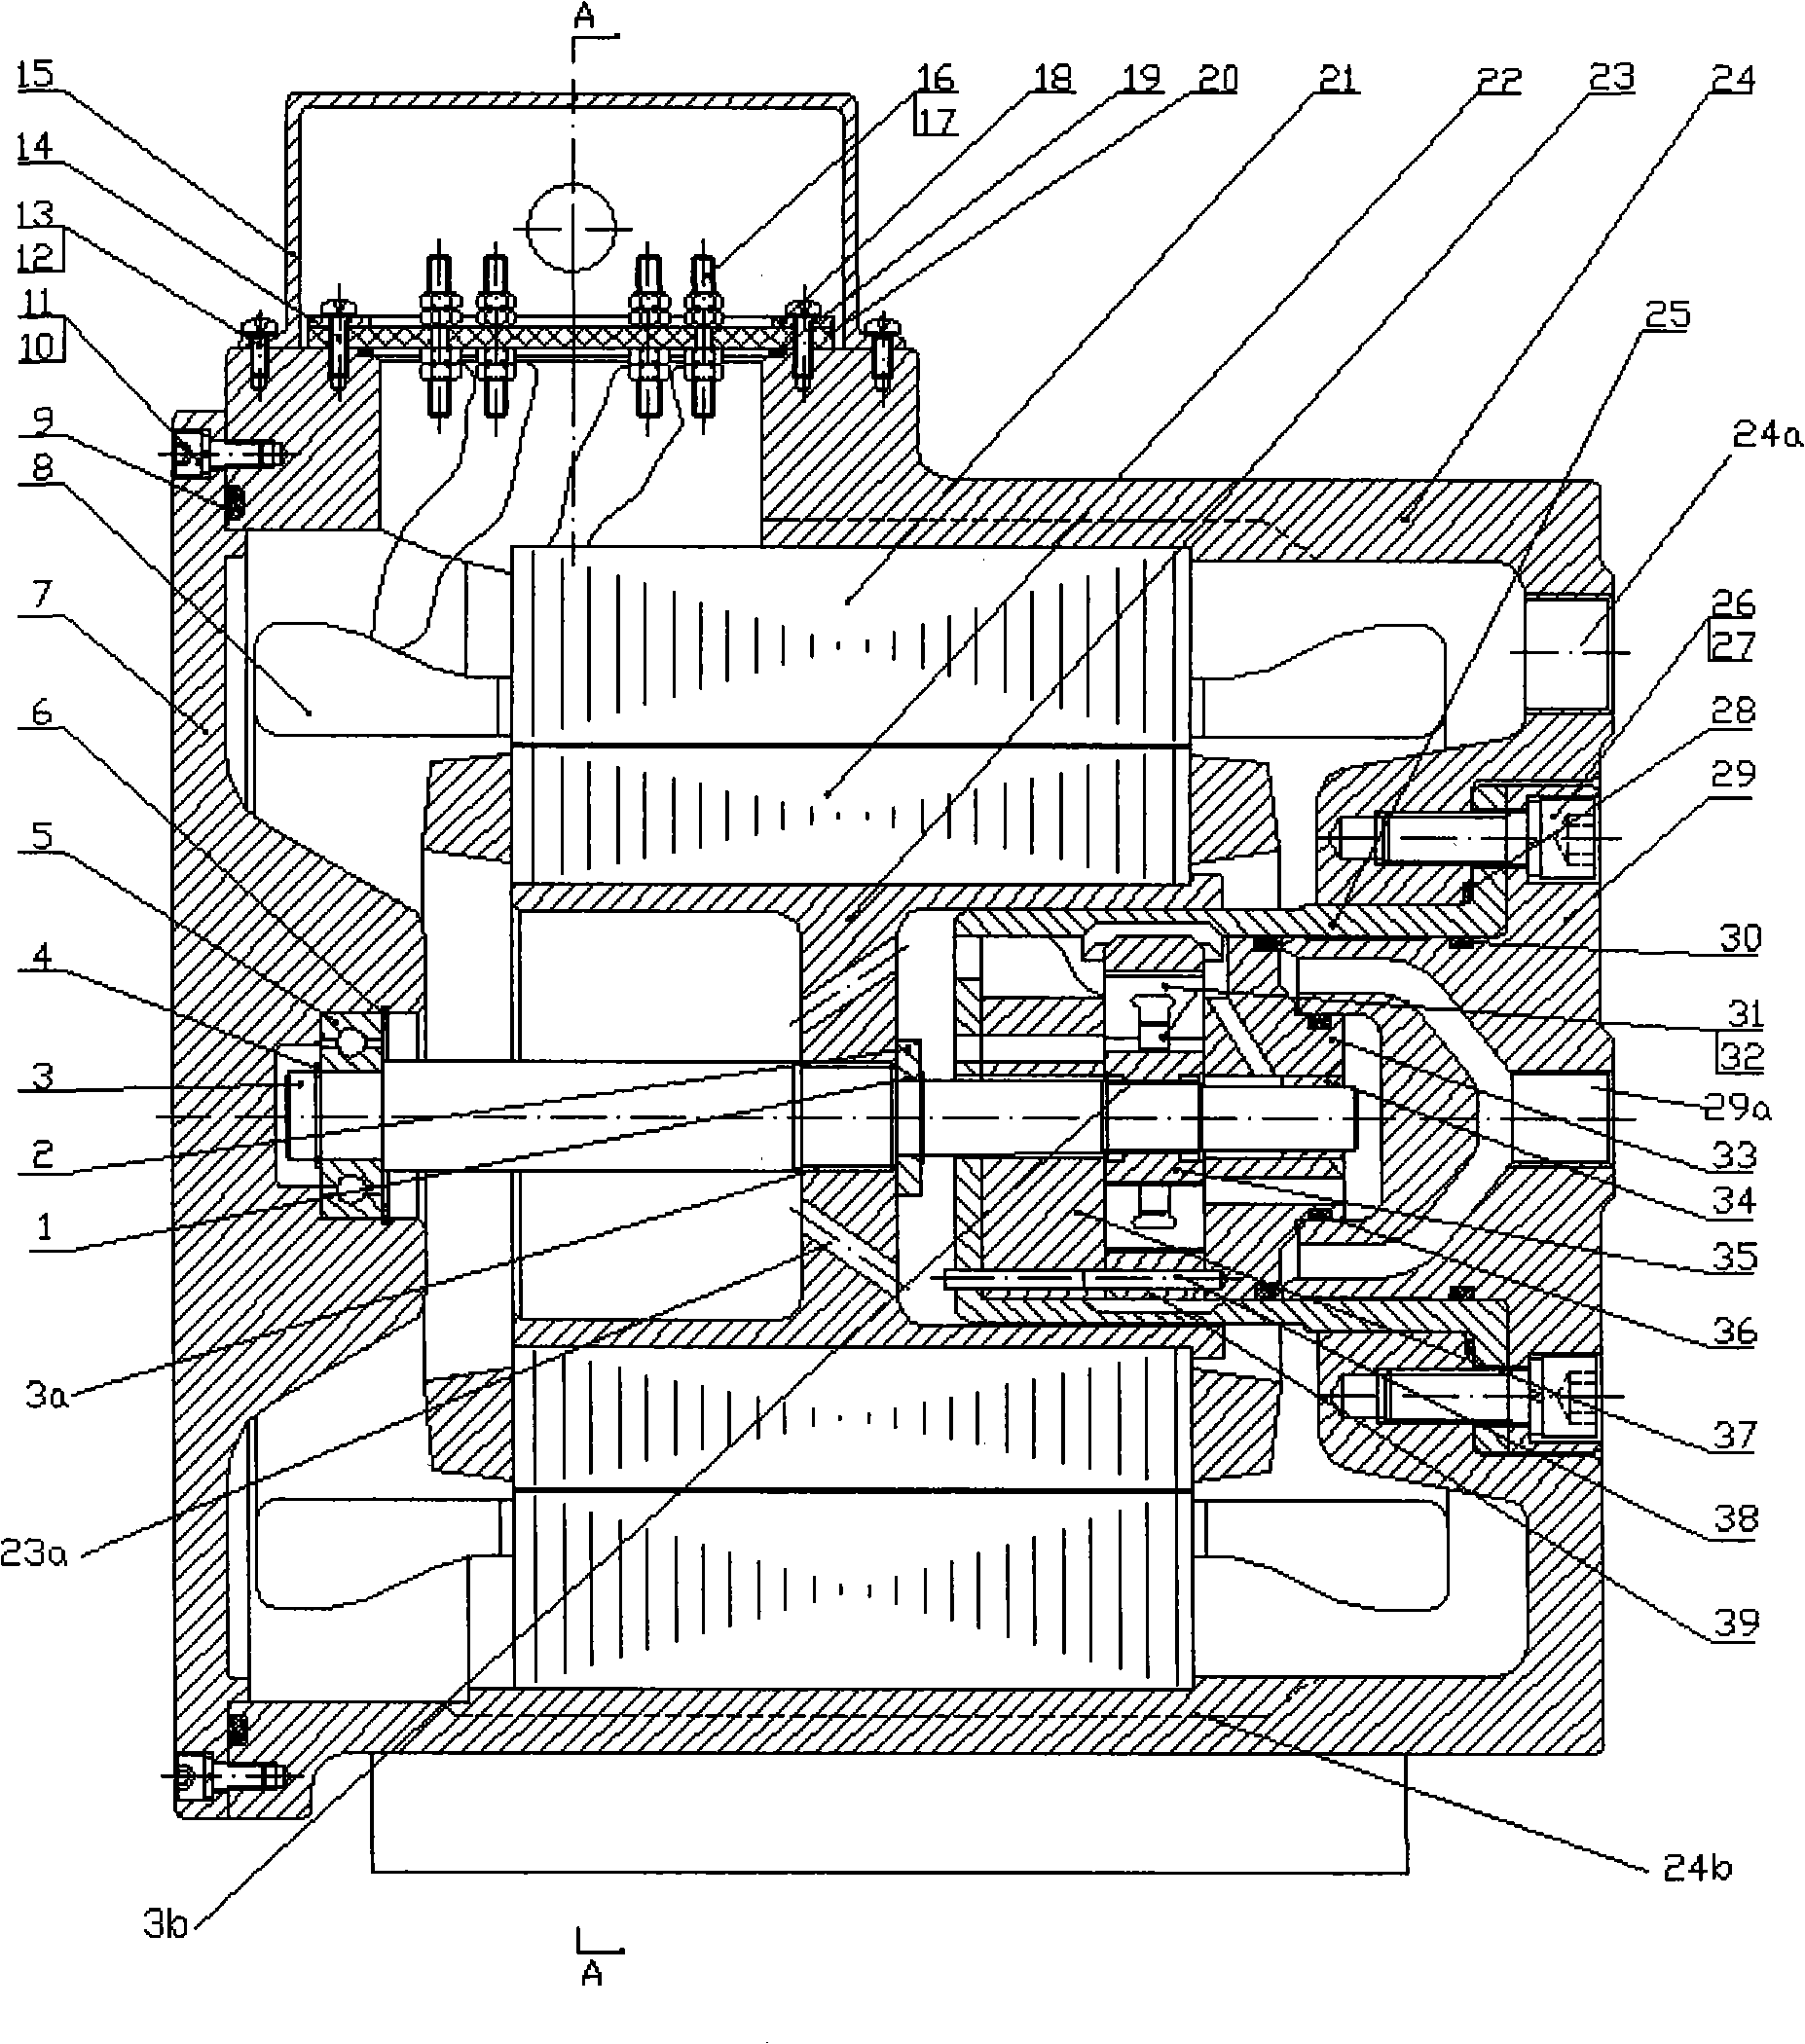 Embedded vane pump of motor